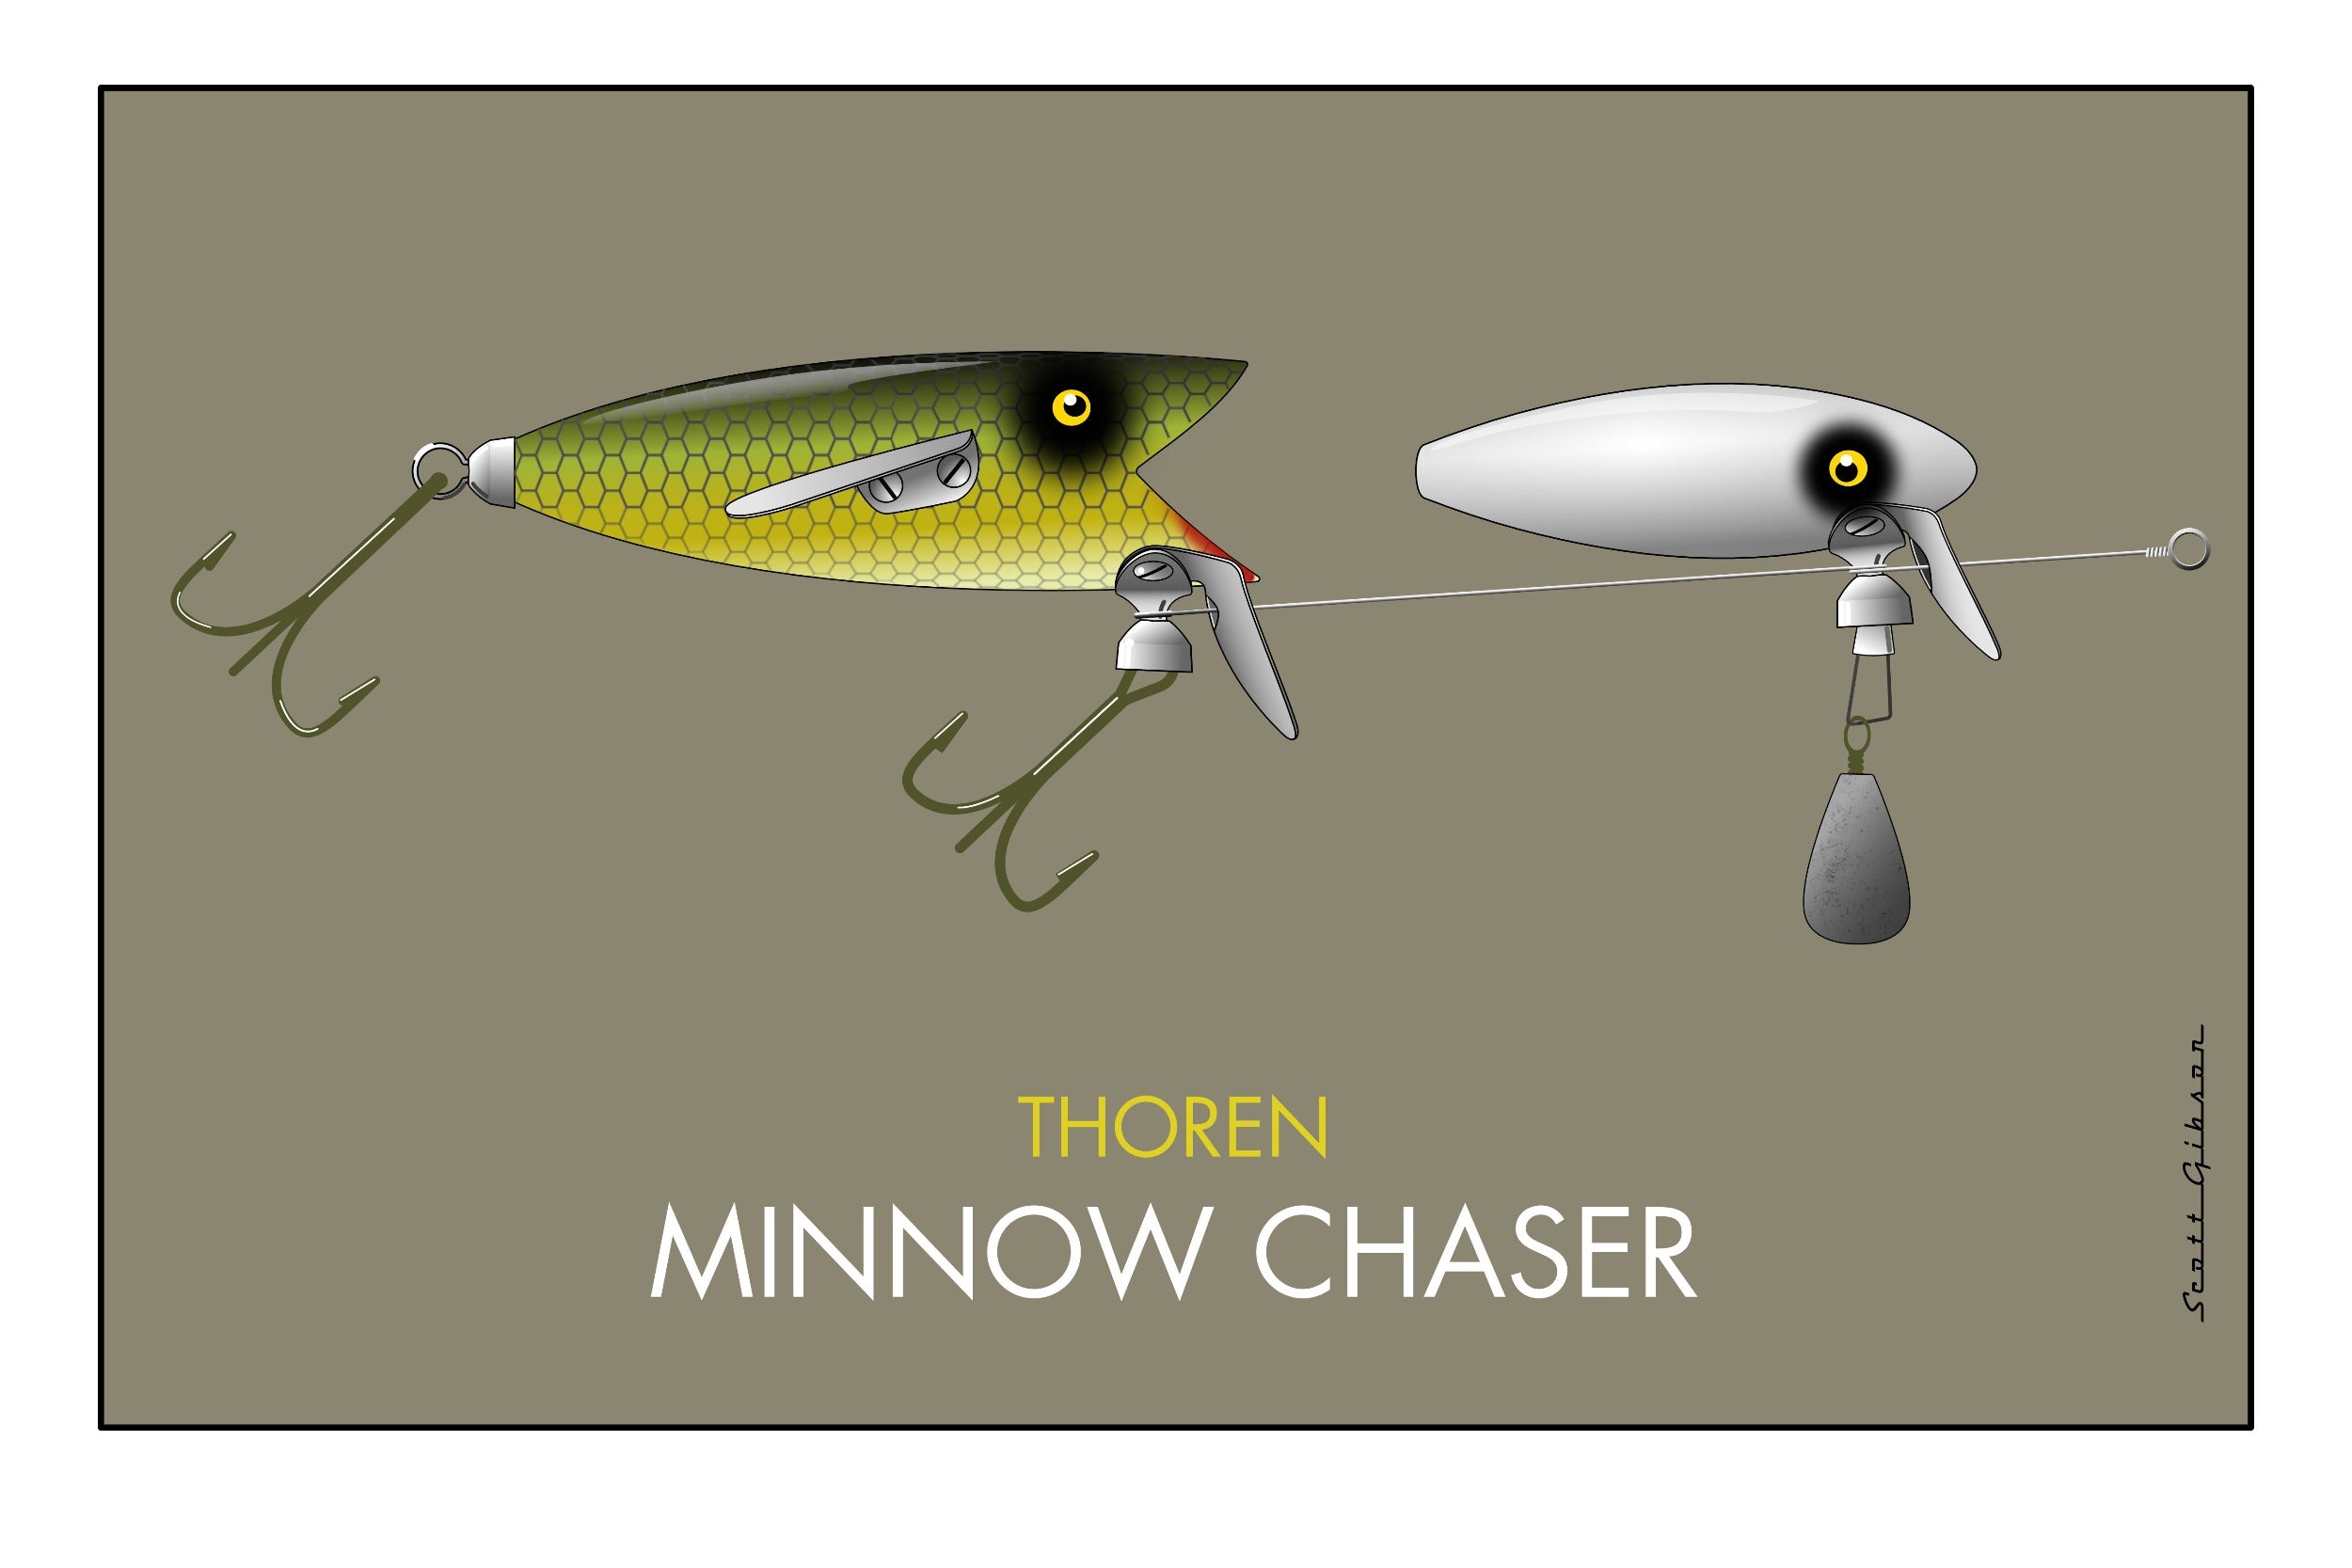 Thoren Minnow Chaser, Fishing Lure Art